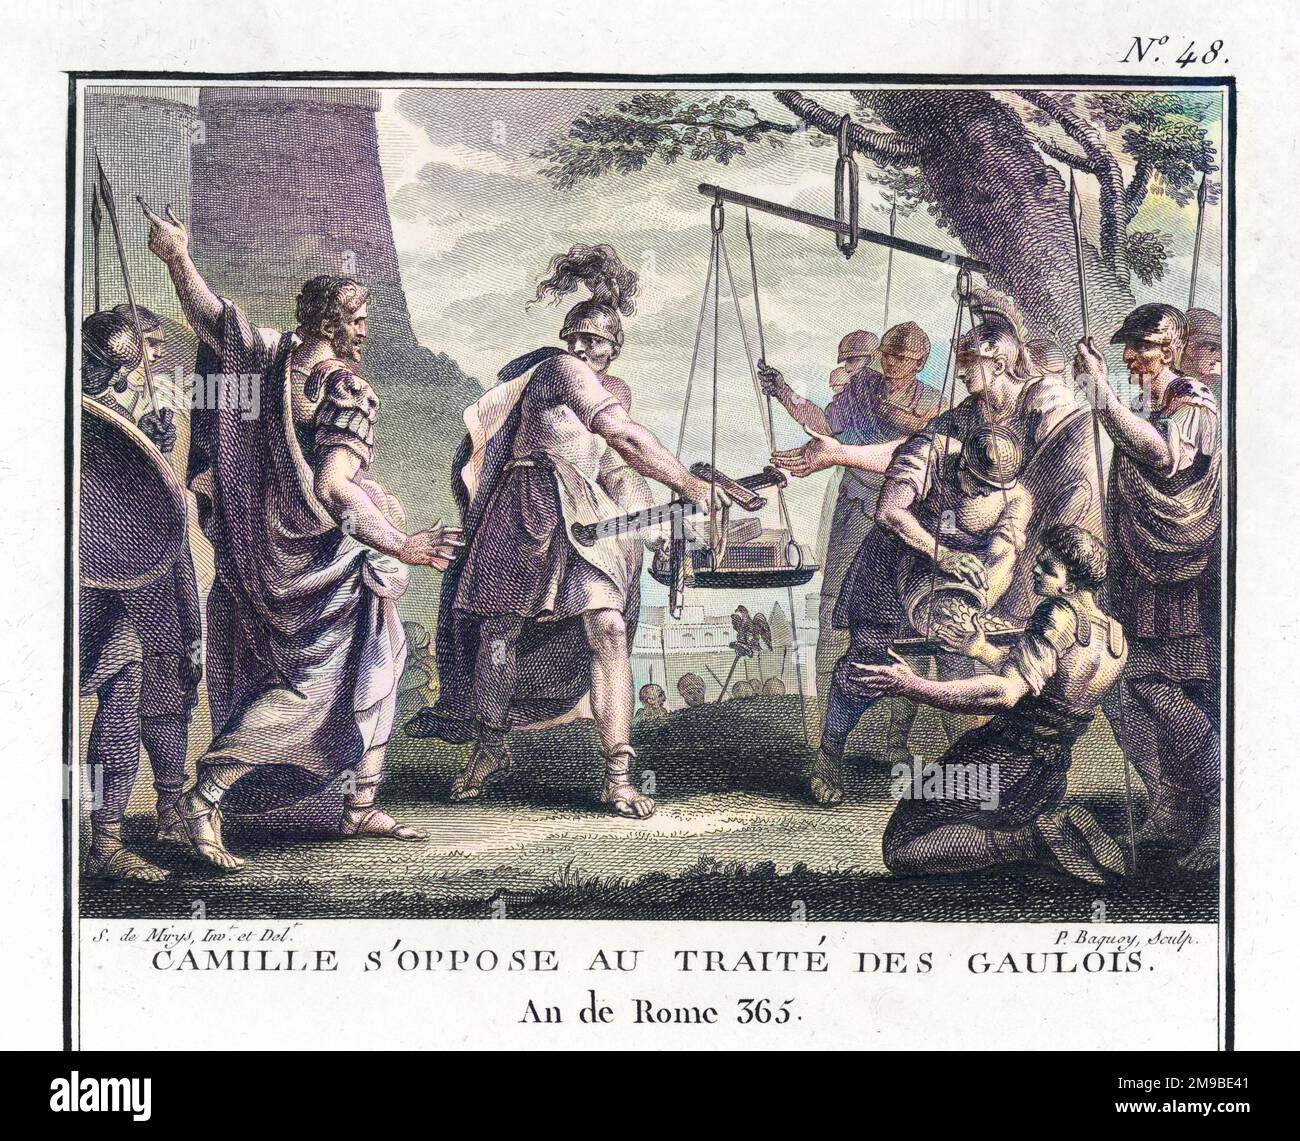 Marcus Furius Camillus, consul romain, s'oppose à la conclusion d'un traité avec les Gaulois. Banque D'Images